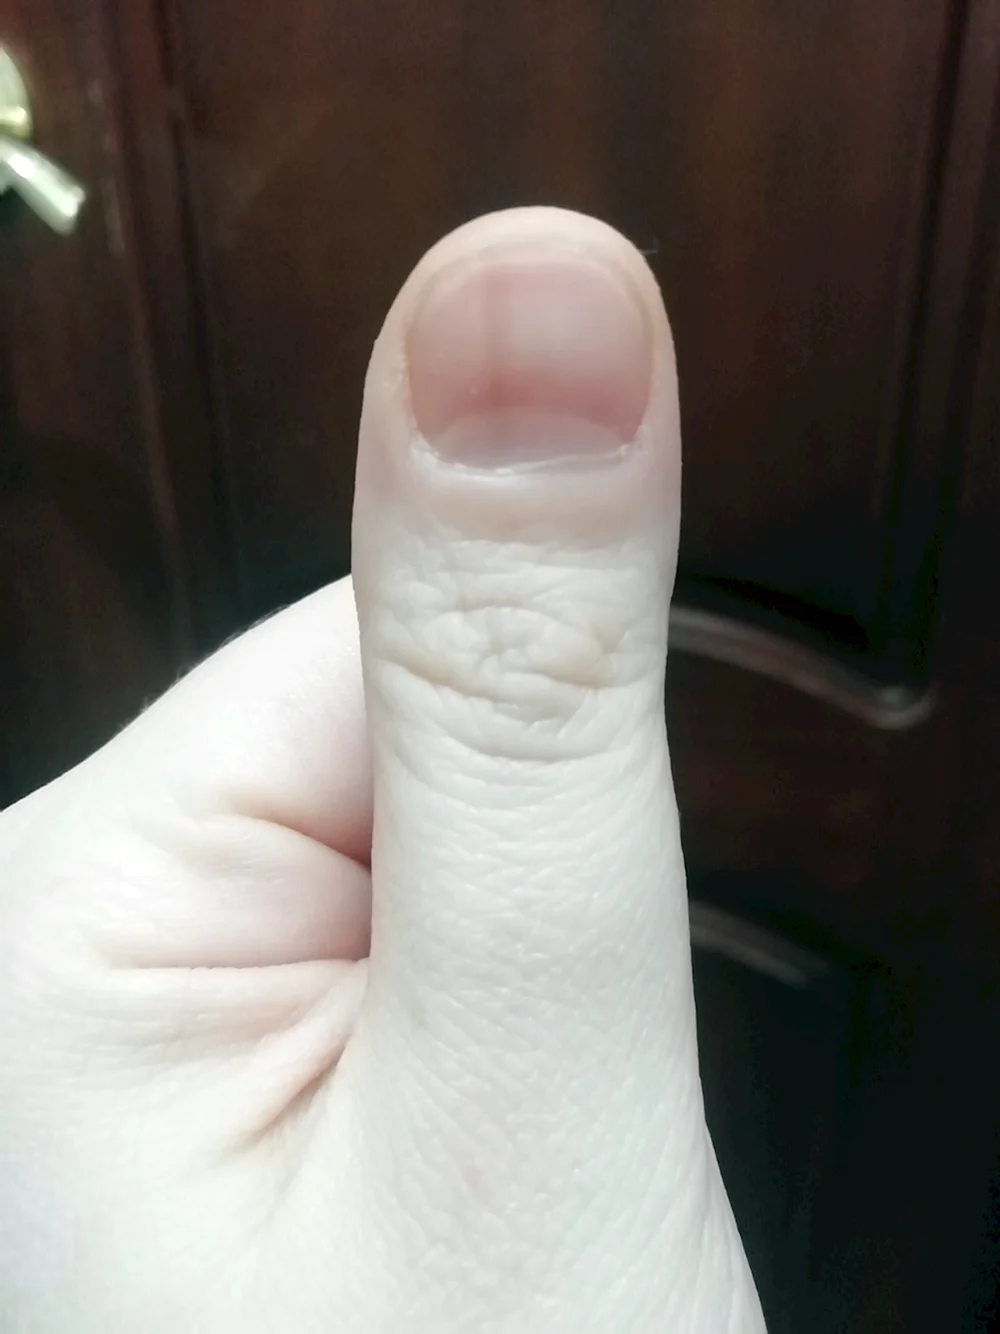 Черная полоска на ногте большого пальца